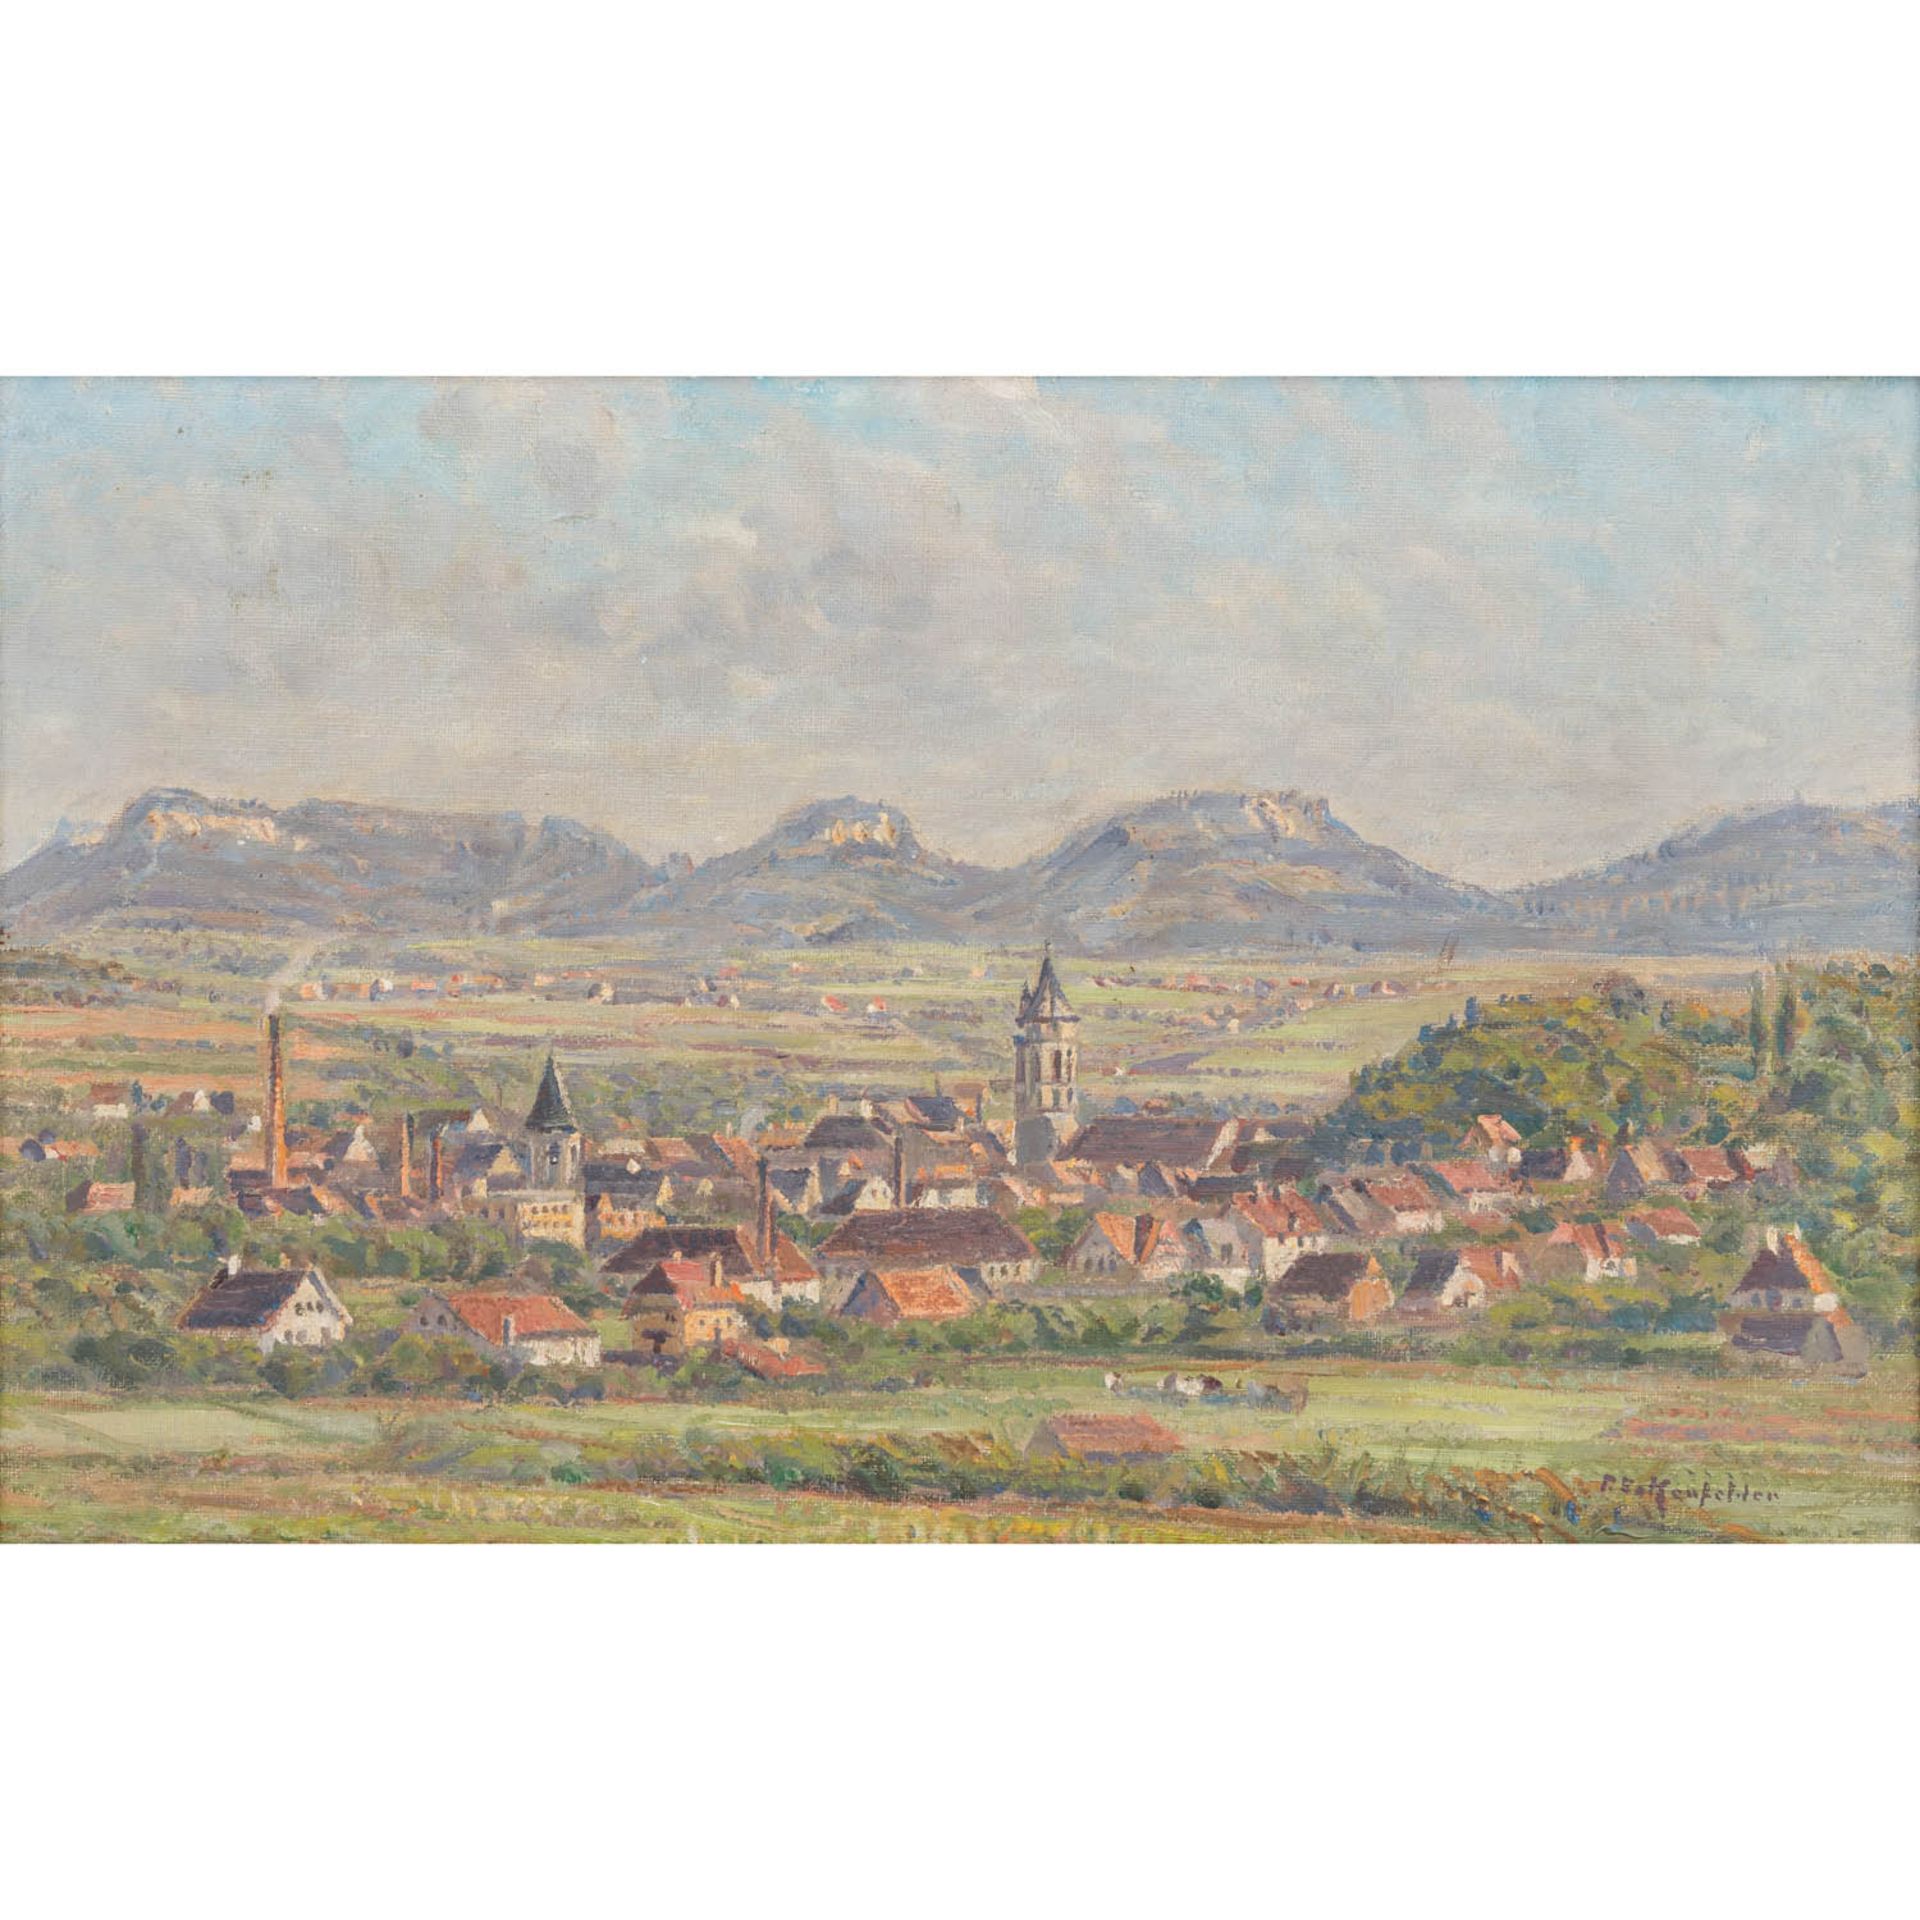 ECKENFELDER, FRIEDRICH (1861-1938), "Blick auf Balingen", 